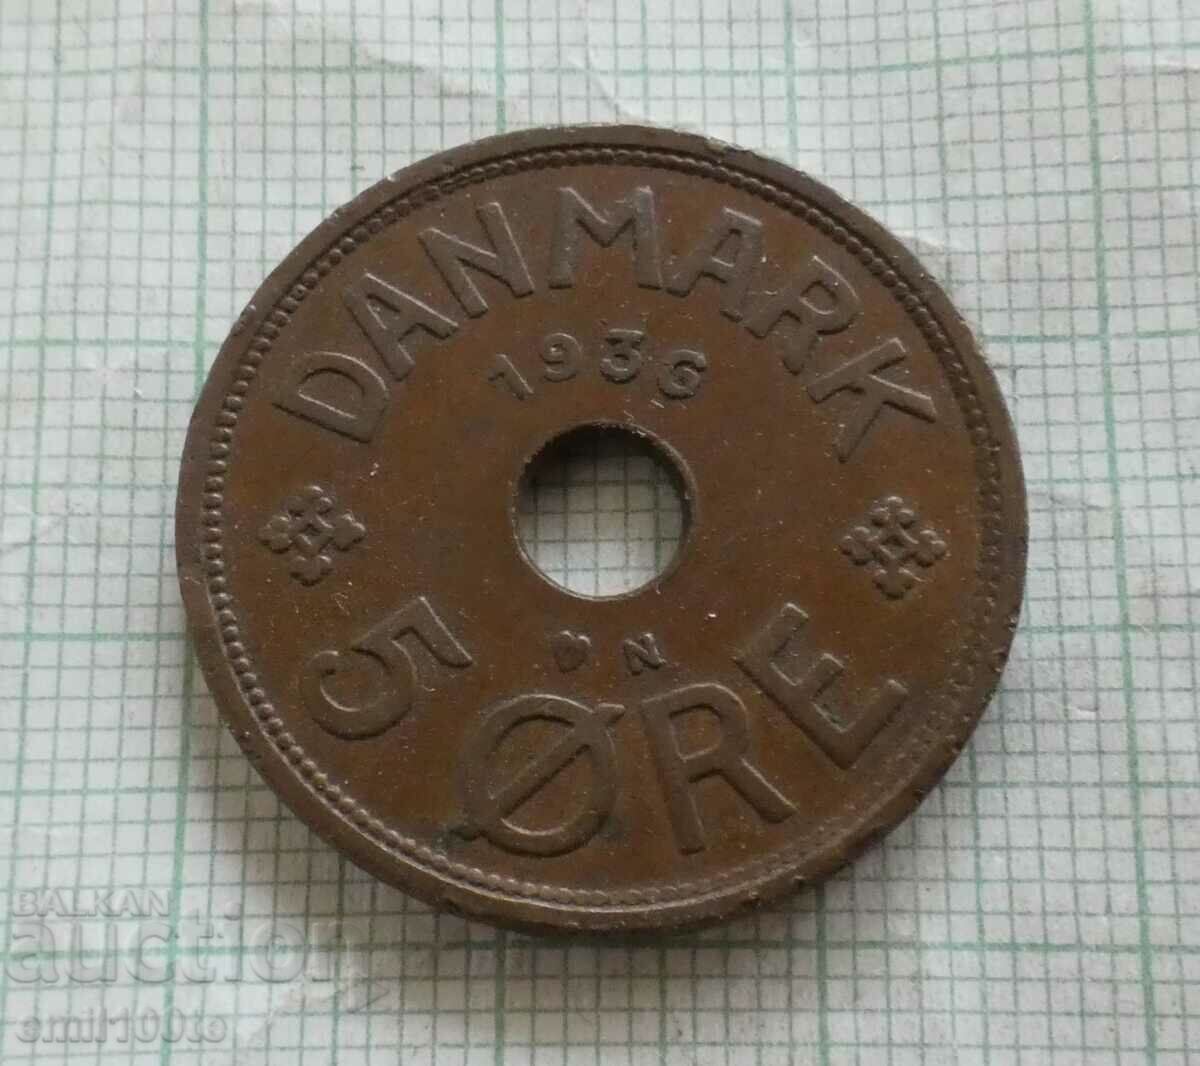 5 Jore 1936 Denmark